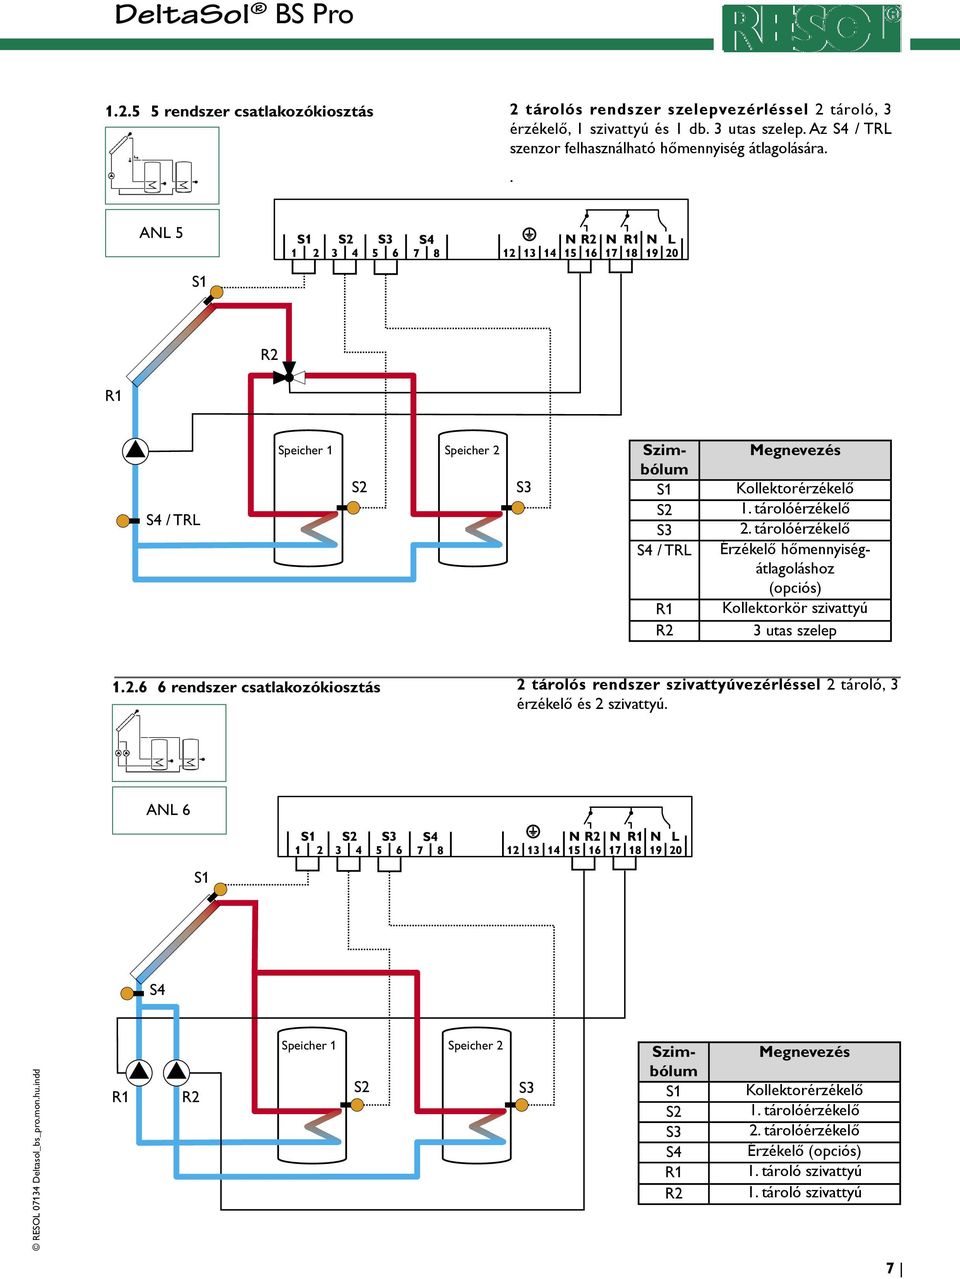 tárolóérzékelő Érzékelő hőmennyiségátlagoláshoz (opciós) Kollektorkör szivattyú 3 utas szelep 1.2.